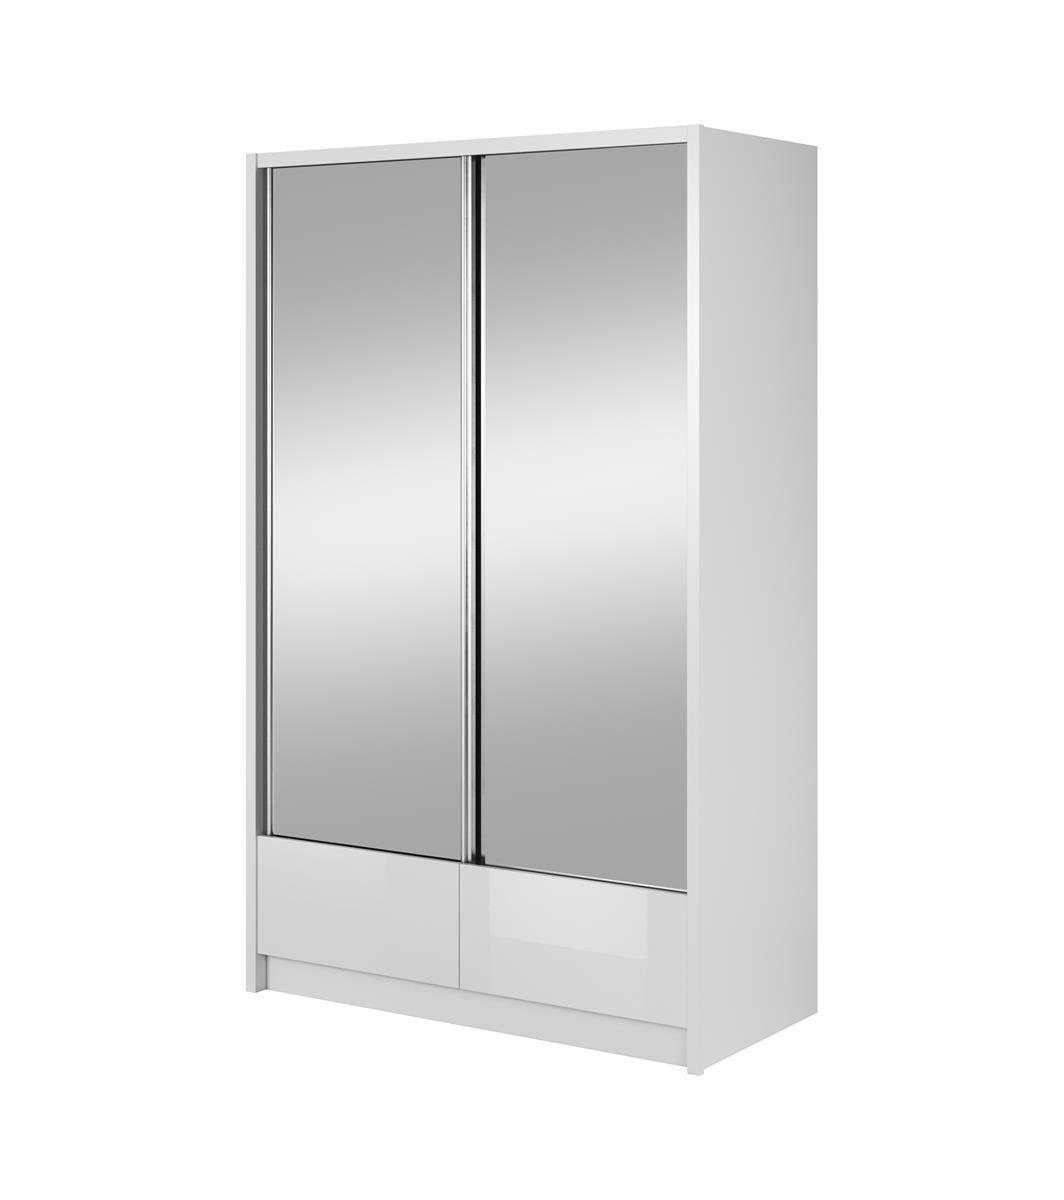 Beautysofa Spiegelschrank Lara Spiegelnd, Wohnzimmer Garderobe) (weißes für schwarzes 2x Schiebtüren Schrank oder II Kleiderschrank, mit